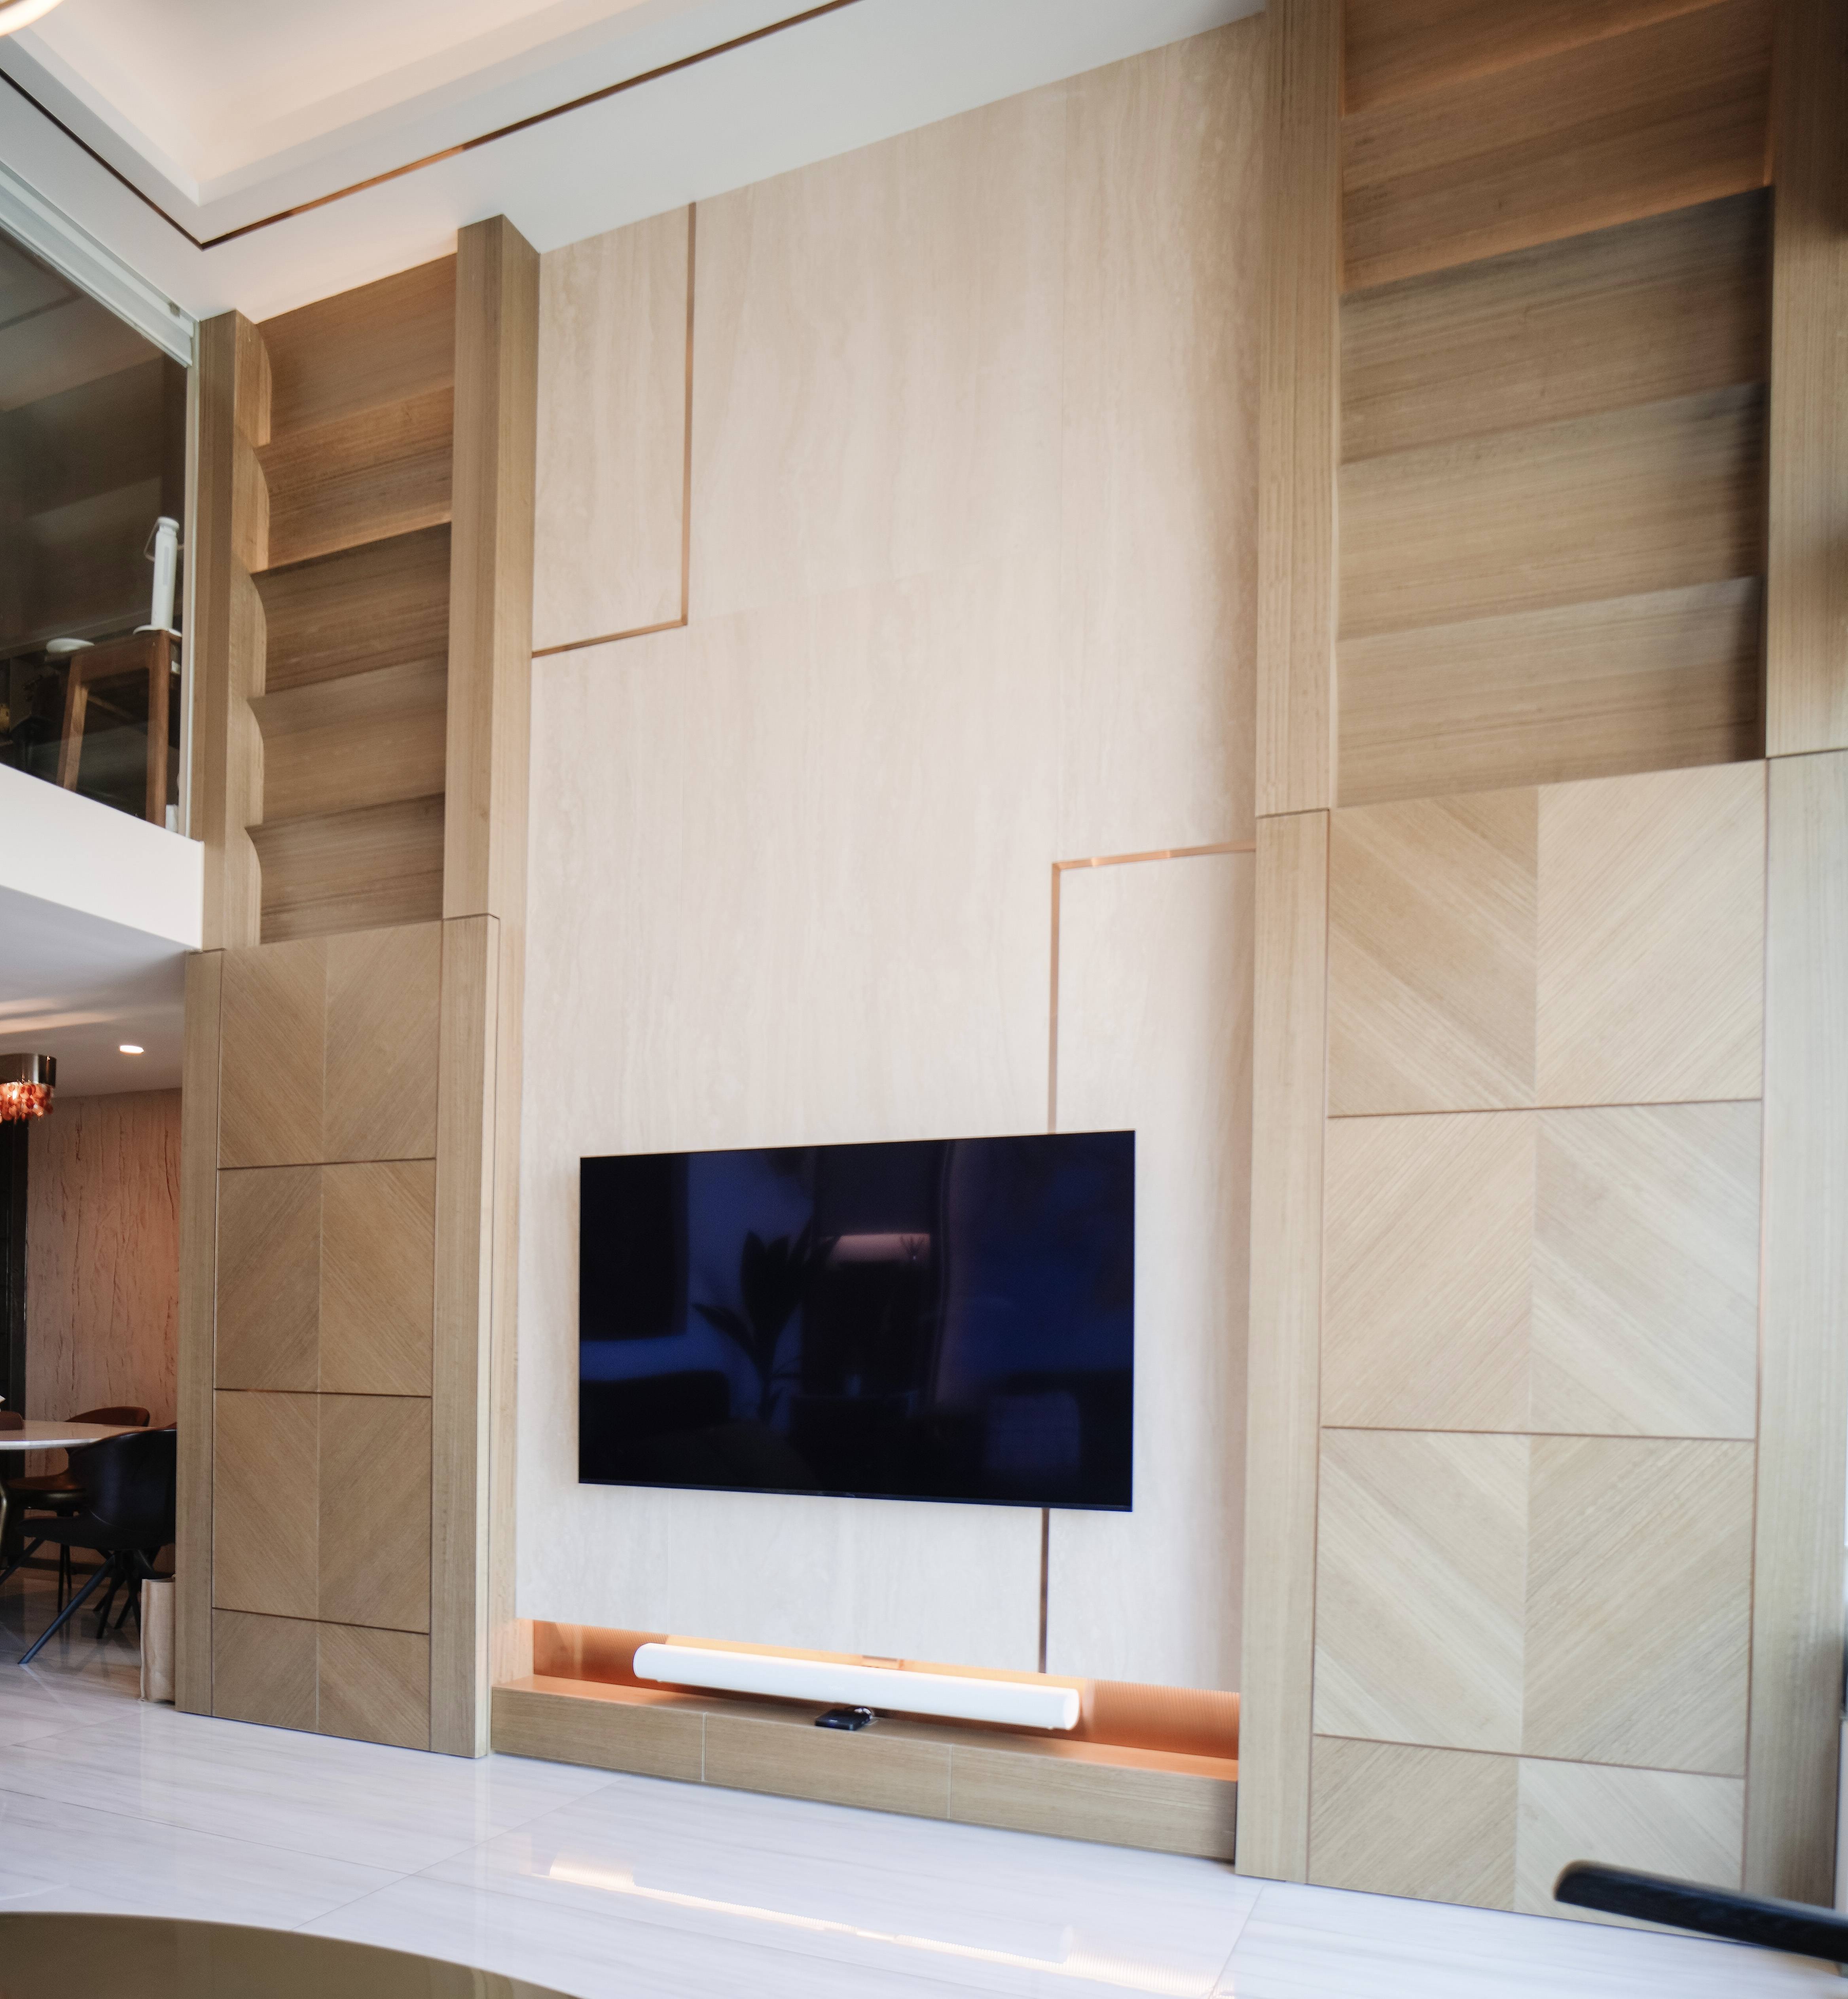 Vincent Leung - Win Key Workshop - Modern Luxurious Penthouse